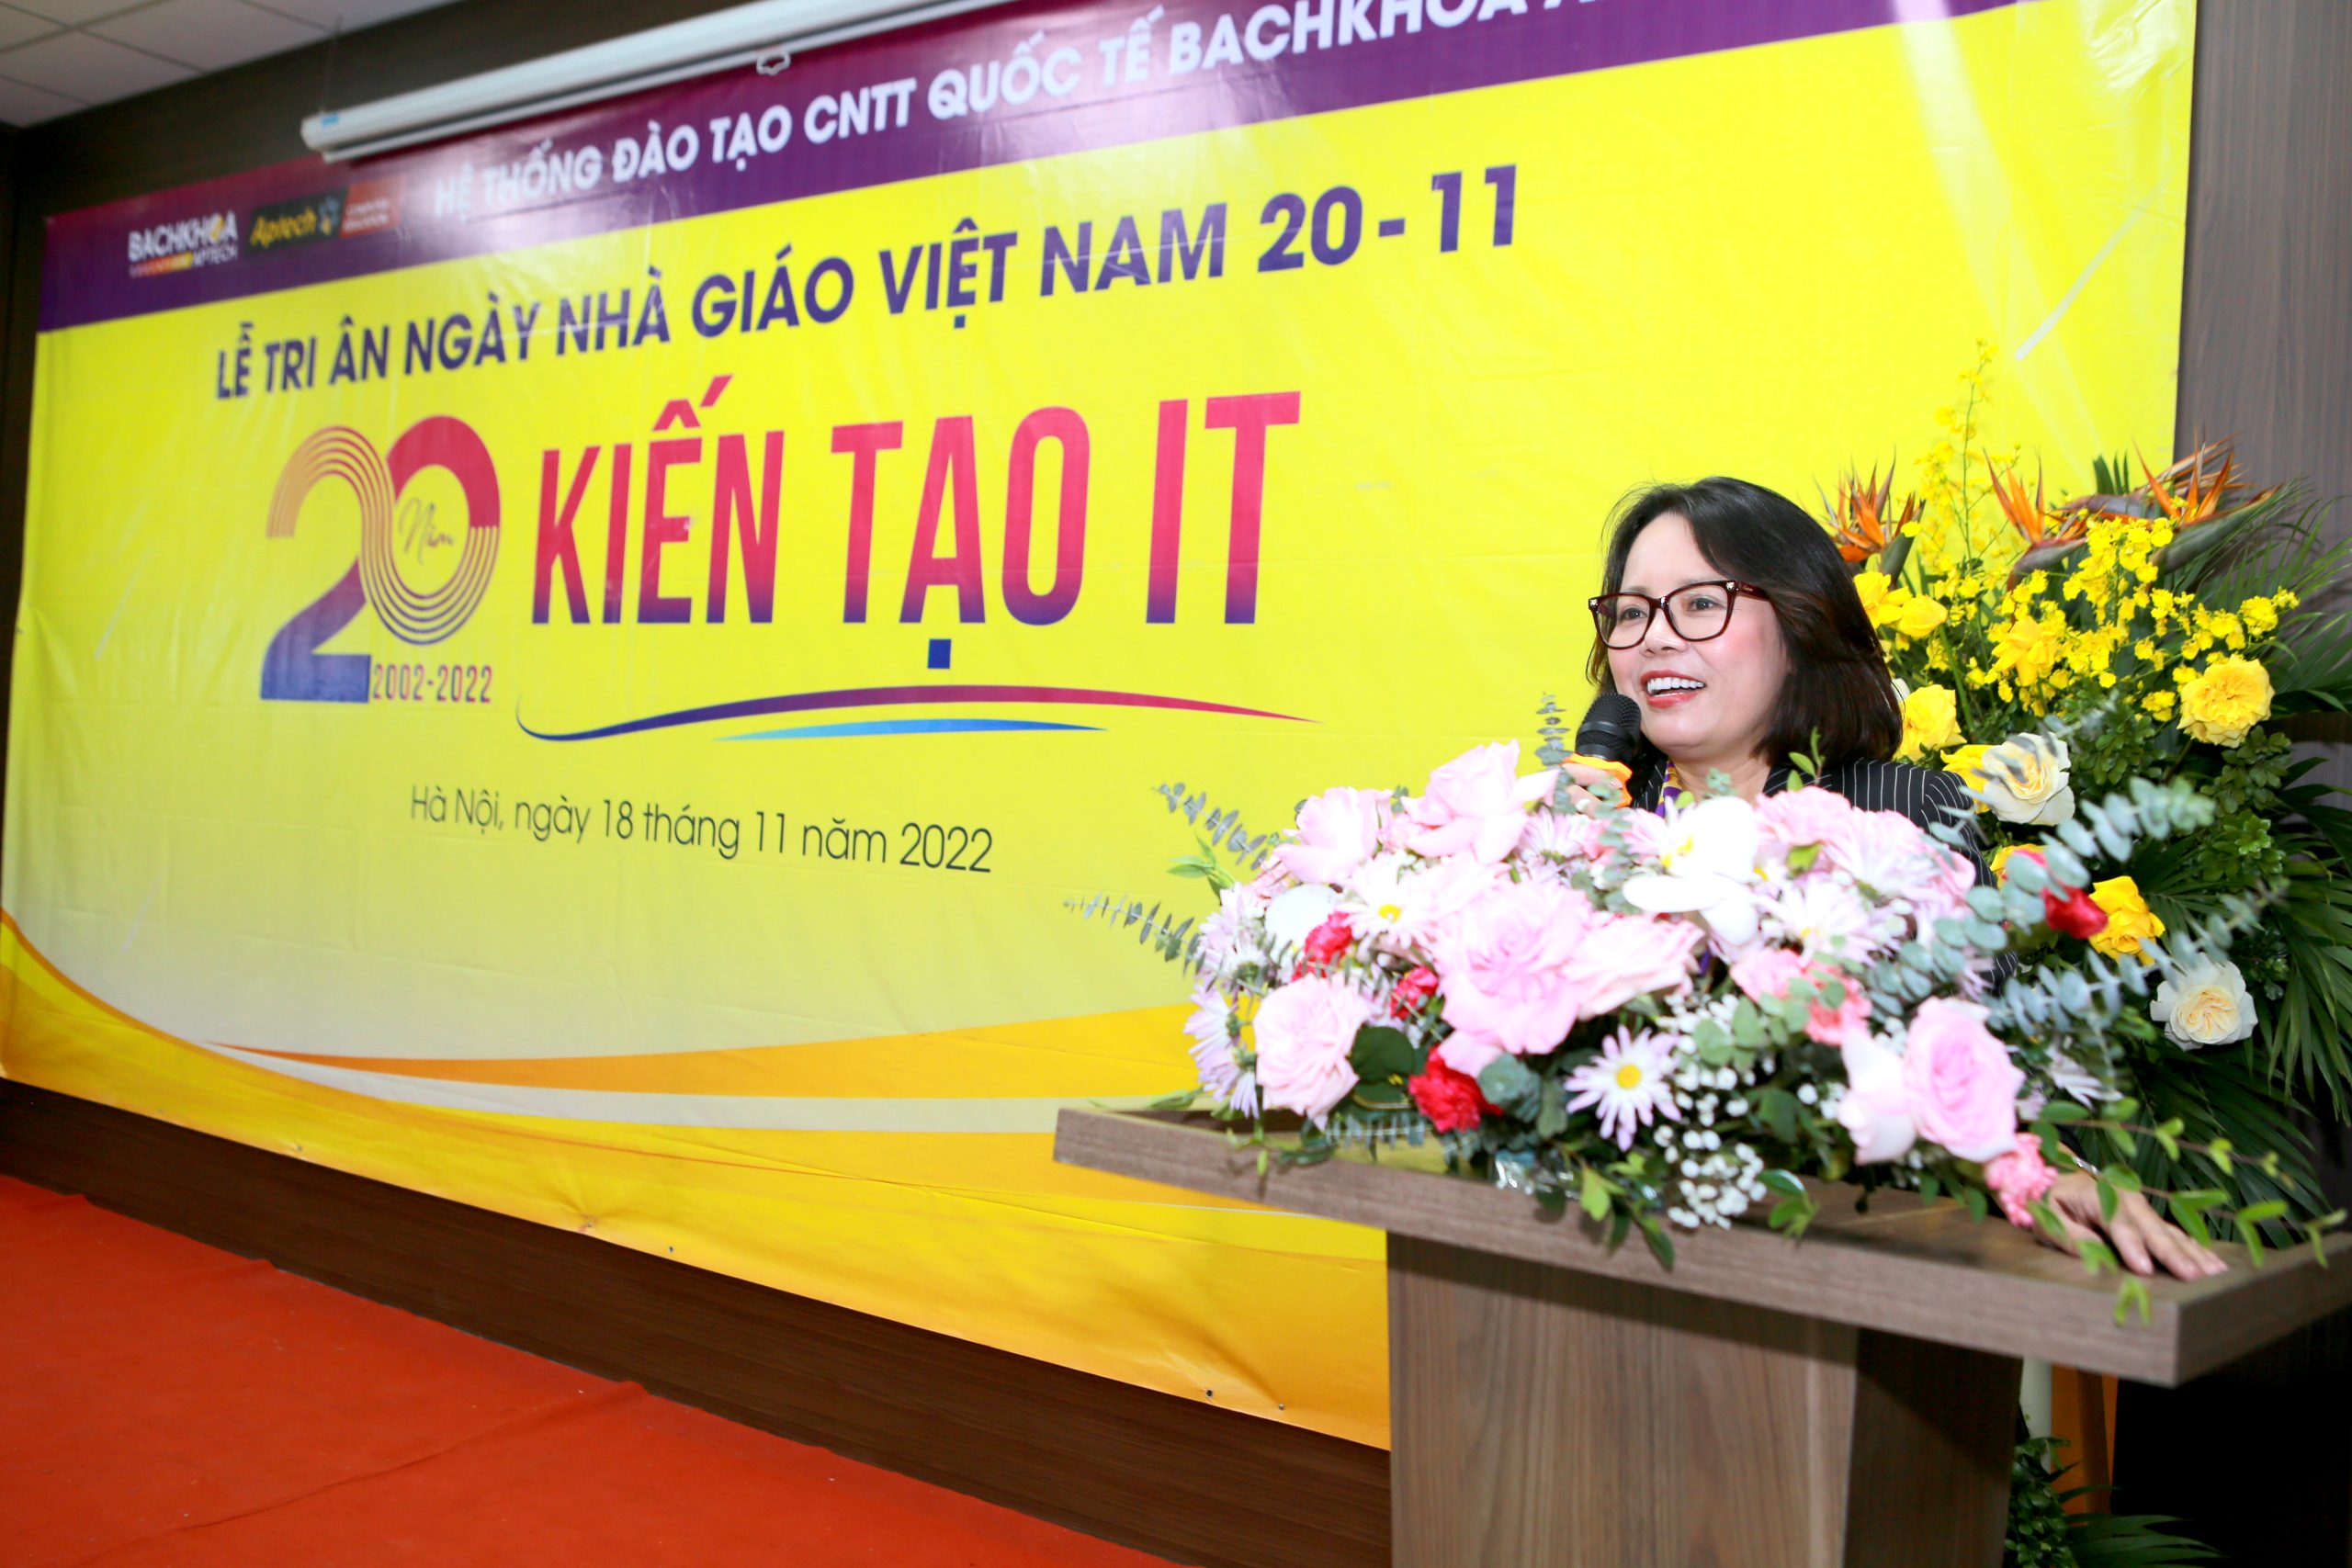 Chủ tịch Phạm Thái Hà phát biểu trong buổi lễ 20-11